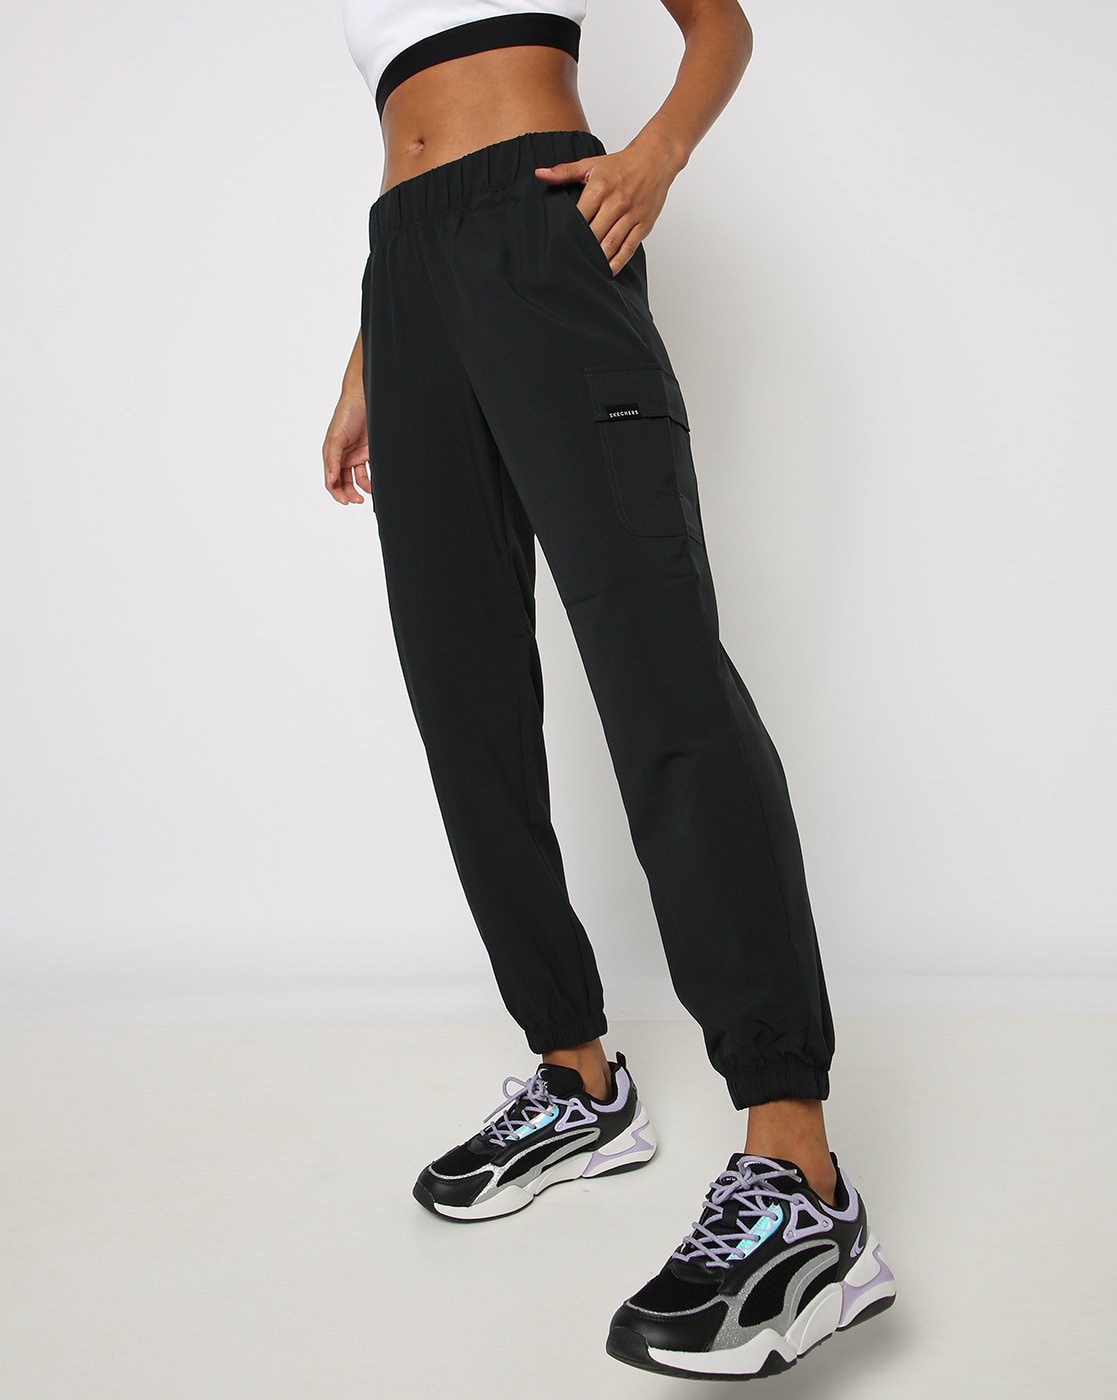 Buy Black Track Pants for Women by Hubberholme Online | Ajio.com